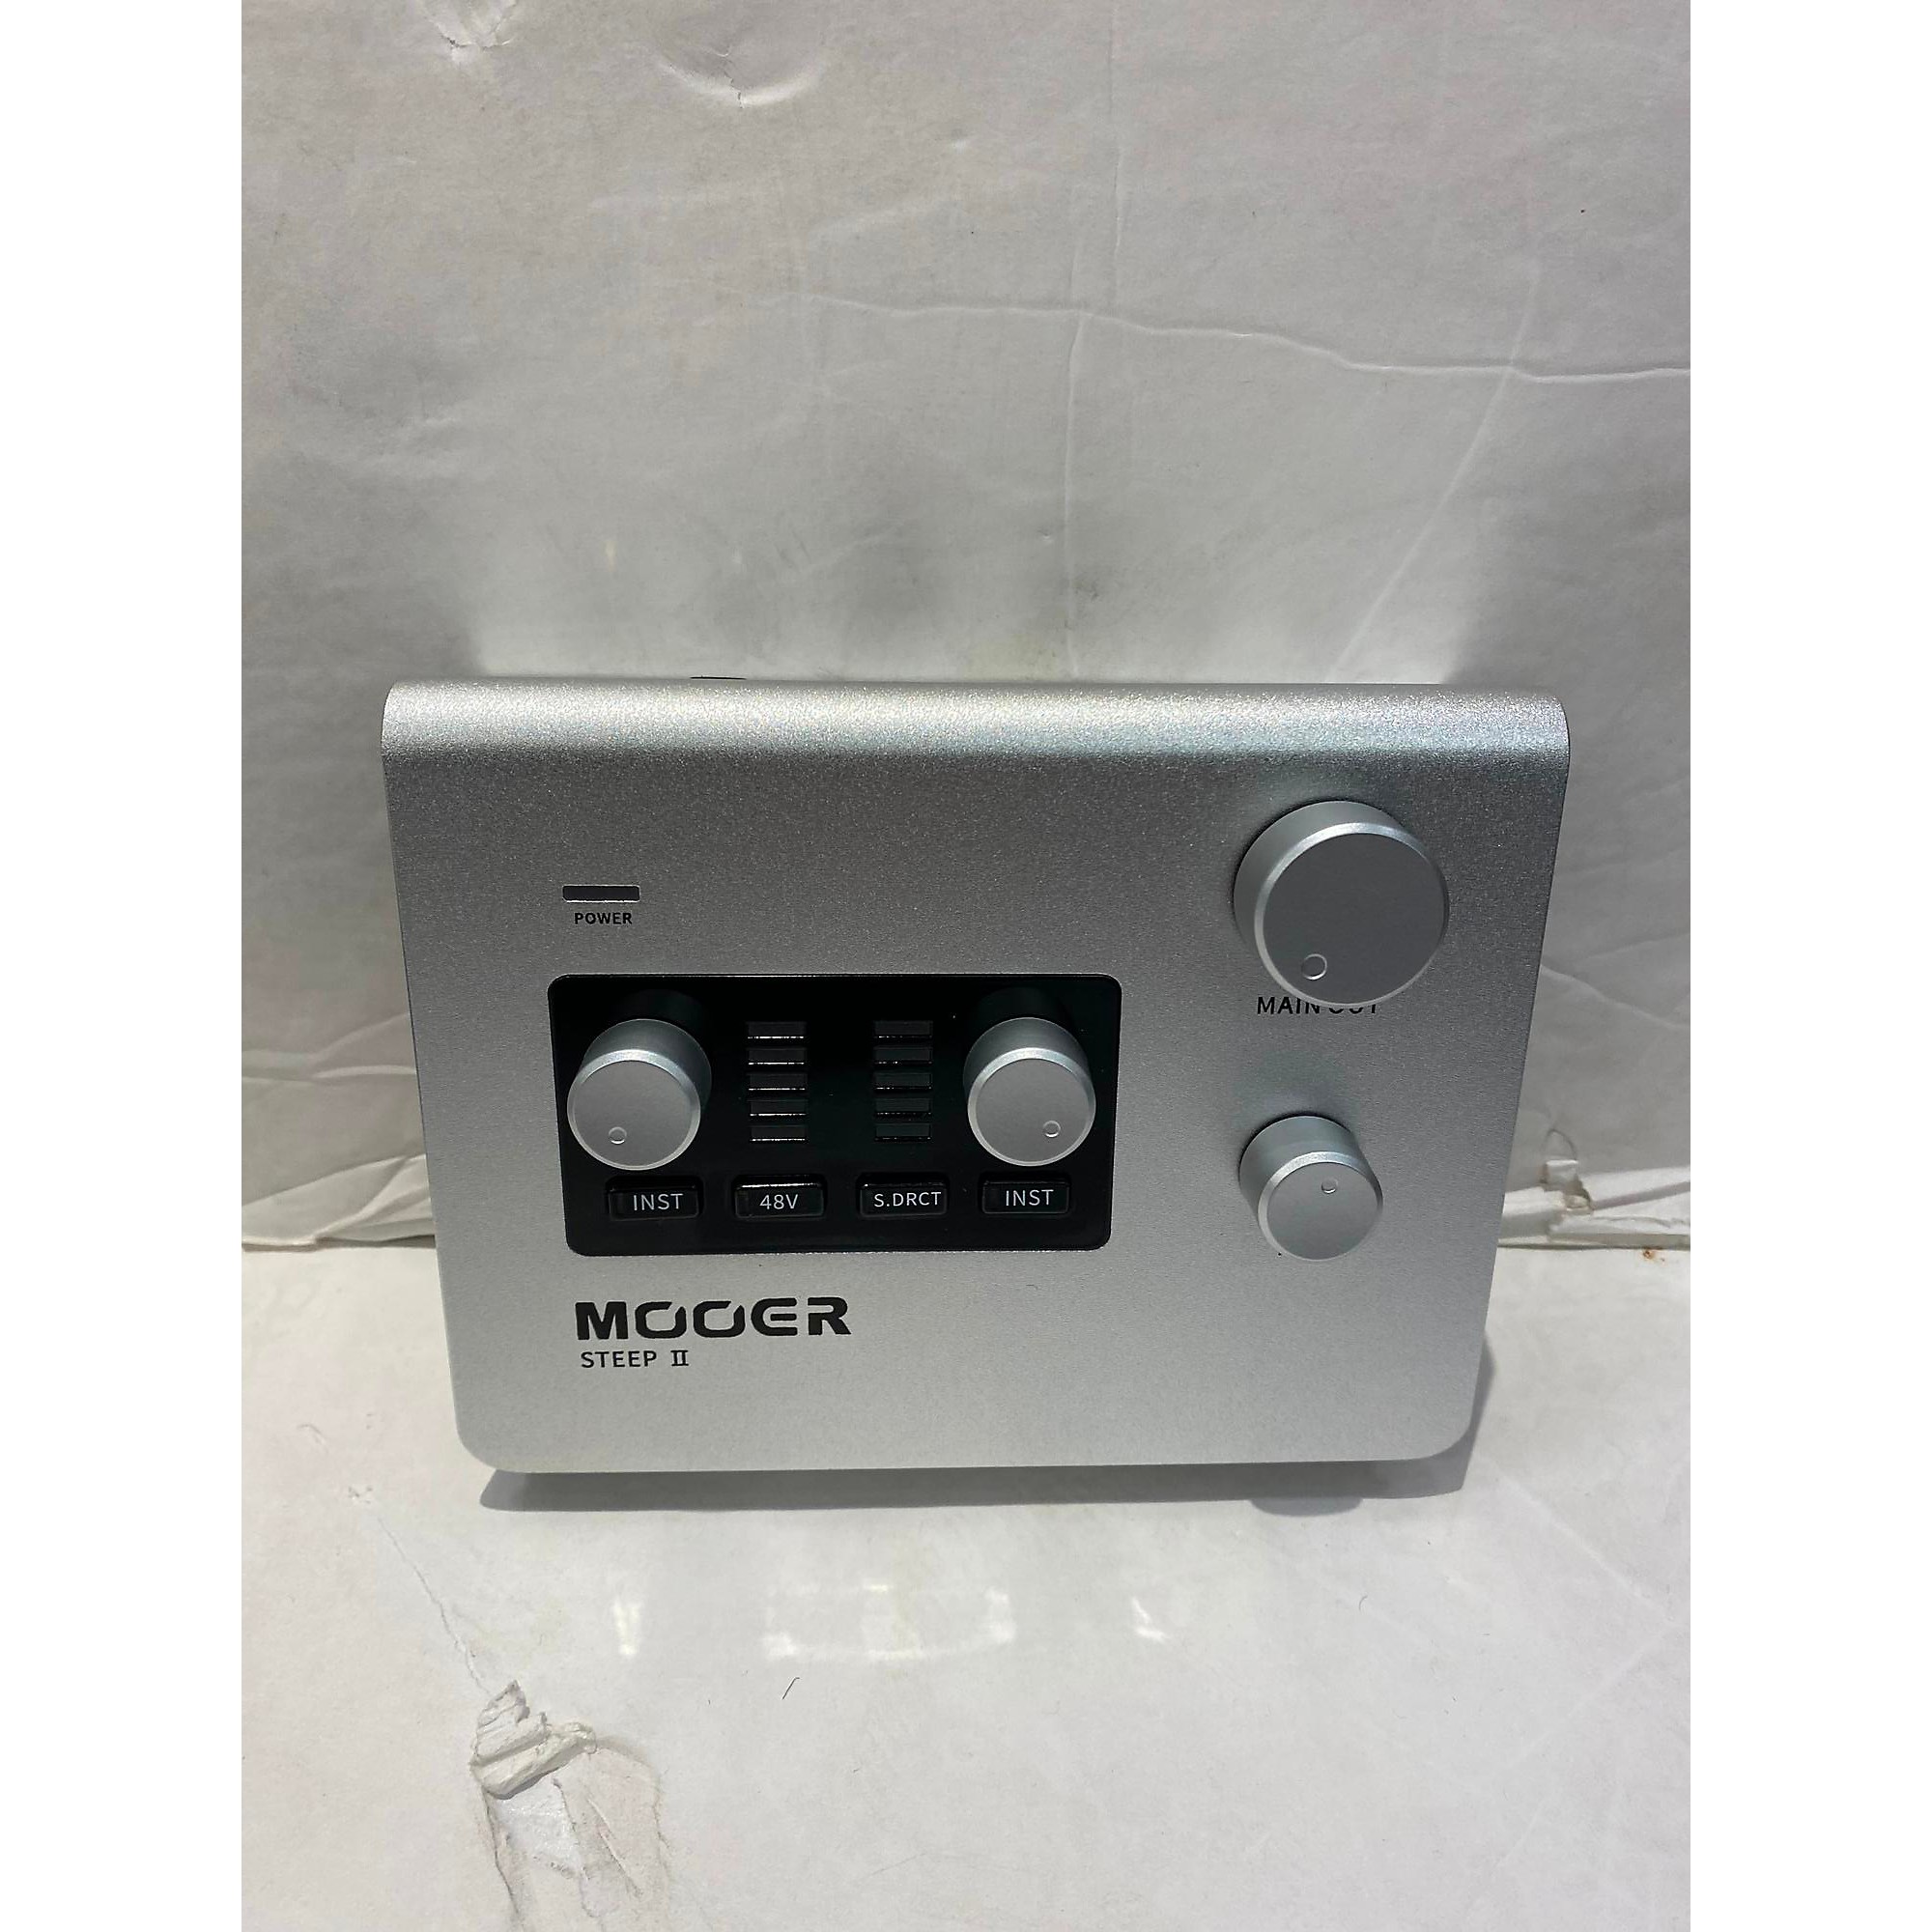 Used Mooer Steep II Audio Interface